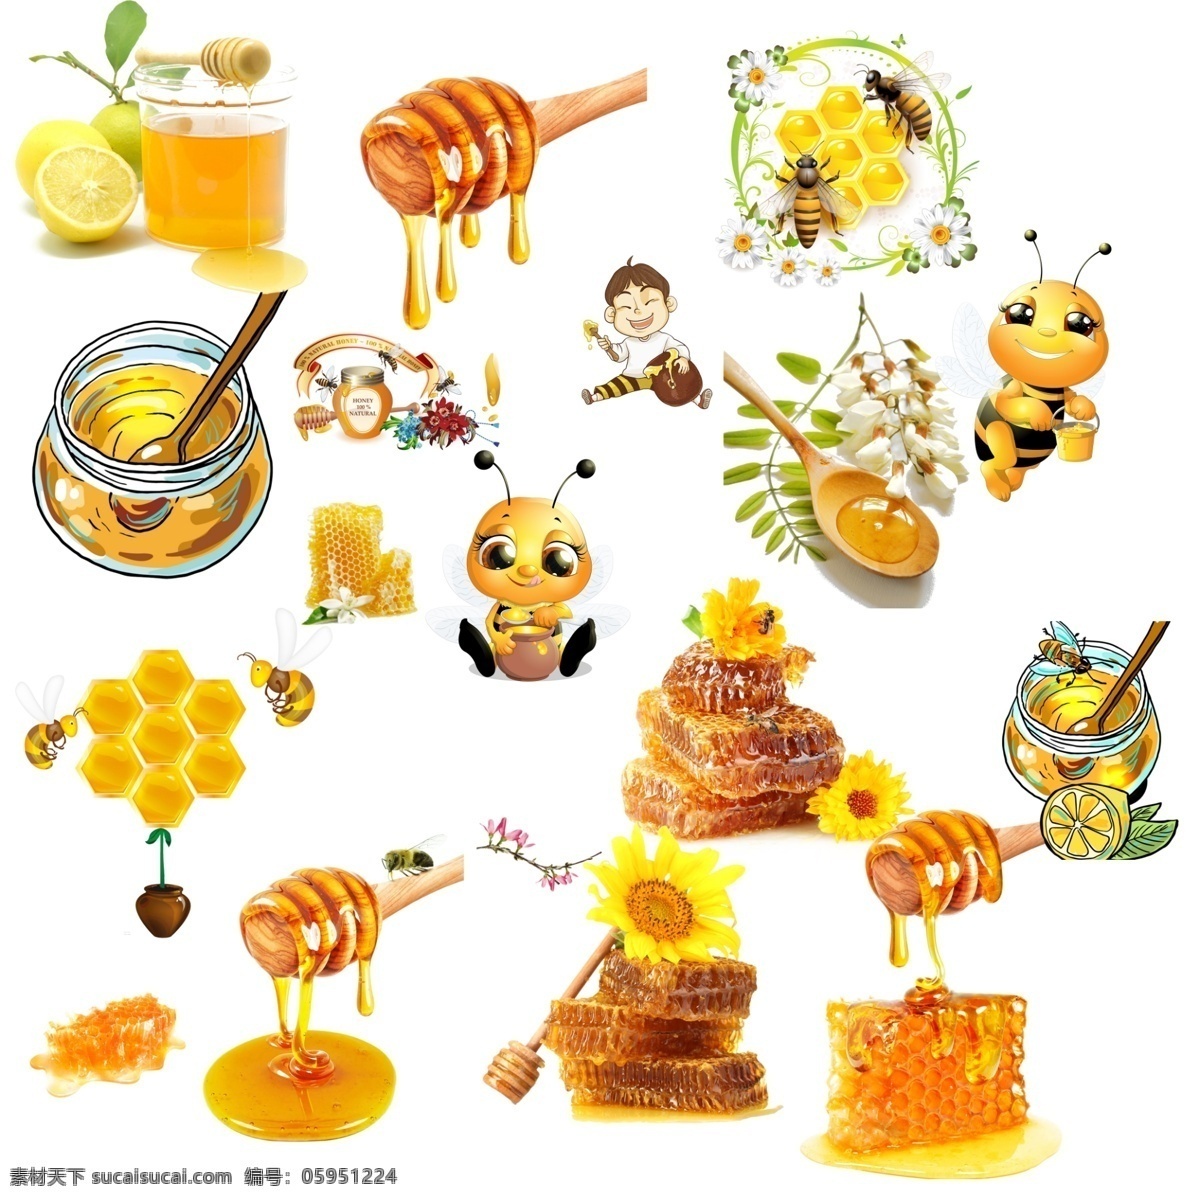 蜜蜂 矢量图蜂蜜 卡通蜂蜜 漫画蜂蜜 手绘蜂蜜 蜂窝 采蜜 美食 甜品 原生态 健康环保 绿色无污染 农产品 农场 农民 养蜂人 蚂蜂 工蜂 蜂后 蜂蜜广告 蜂蜜宣传图 分层